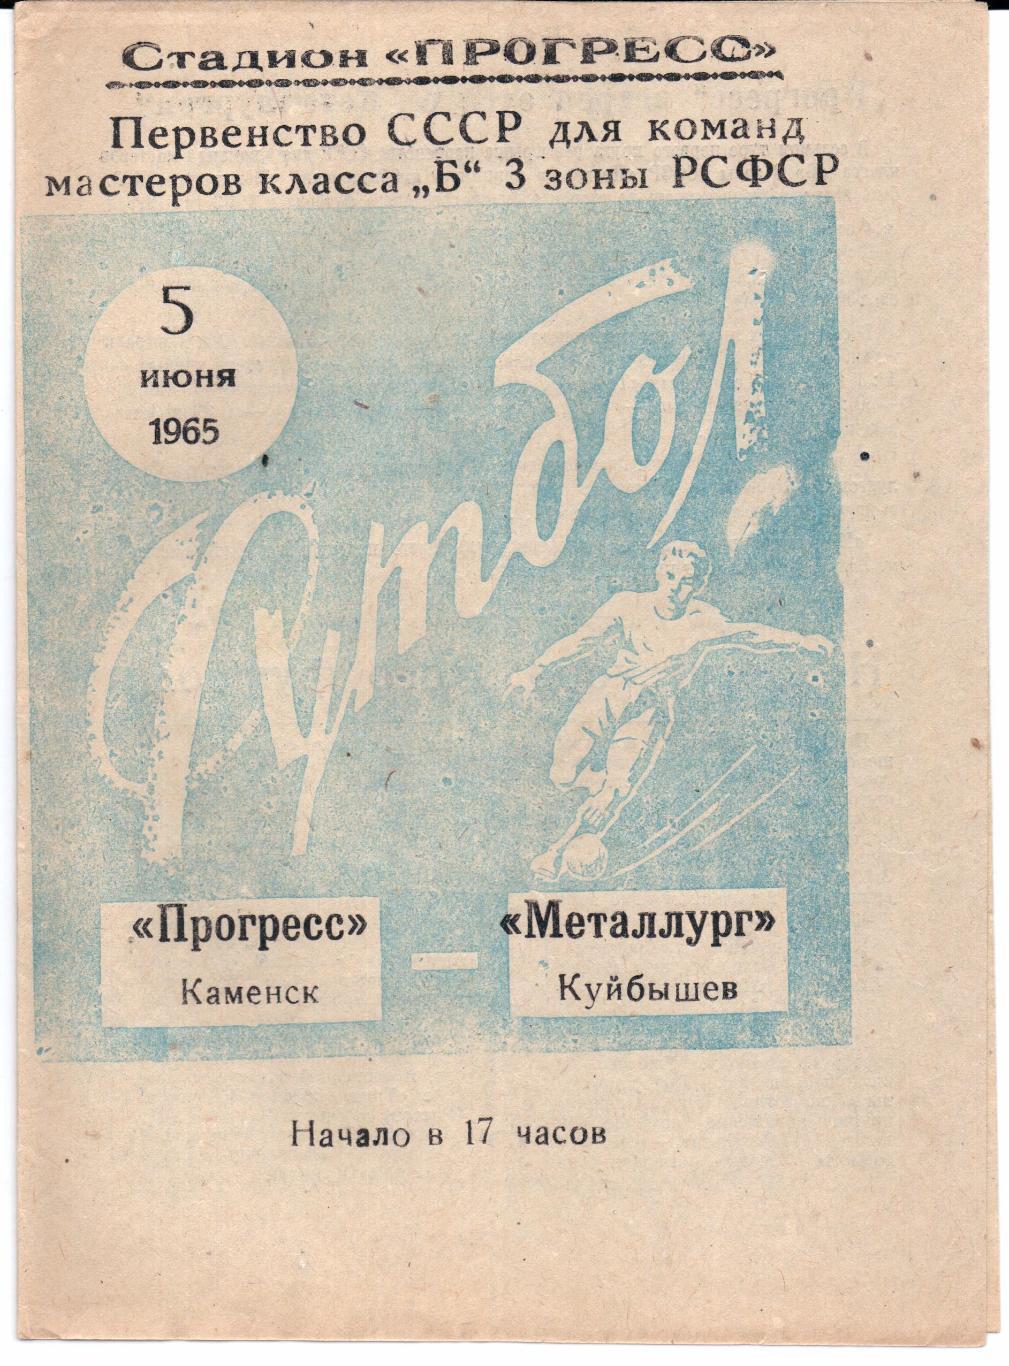 Класс Б 3-я зона Прогресс(Каменск)-Металлург( Куйбышев)05.06.1965